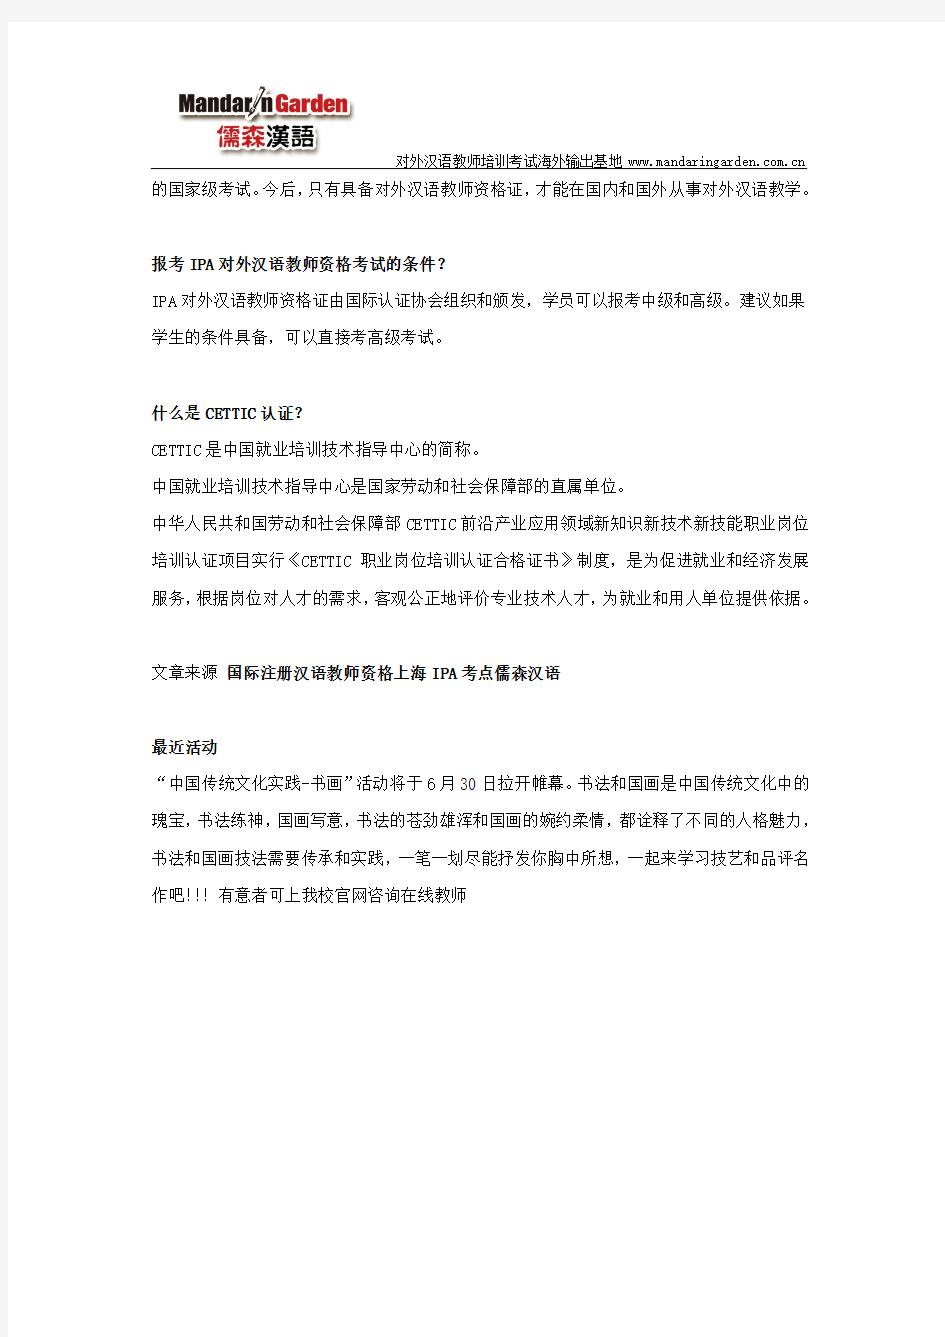 国际注册汉语教师资格上海考点谭老师解读IPA及CETTIC认证